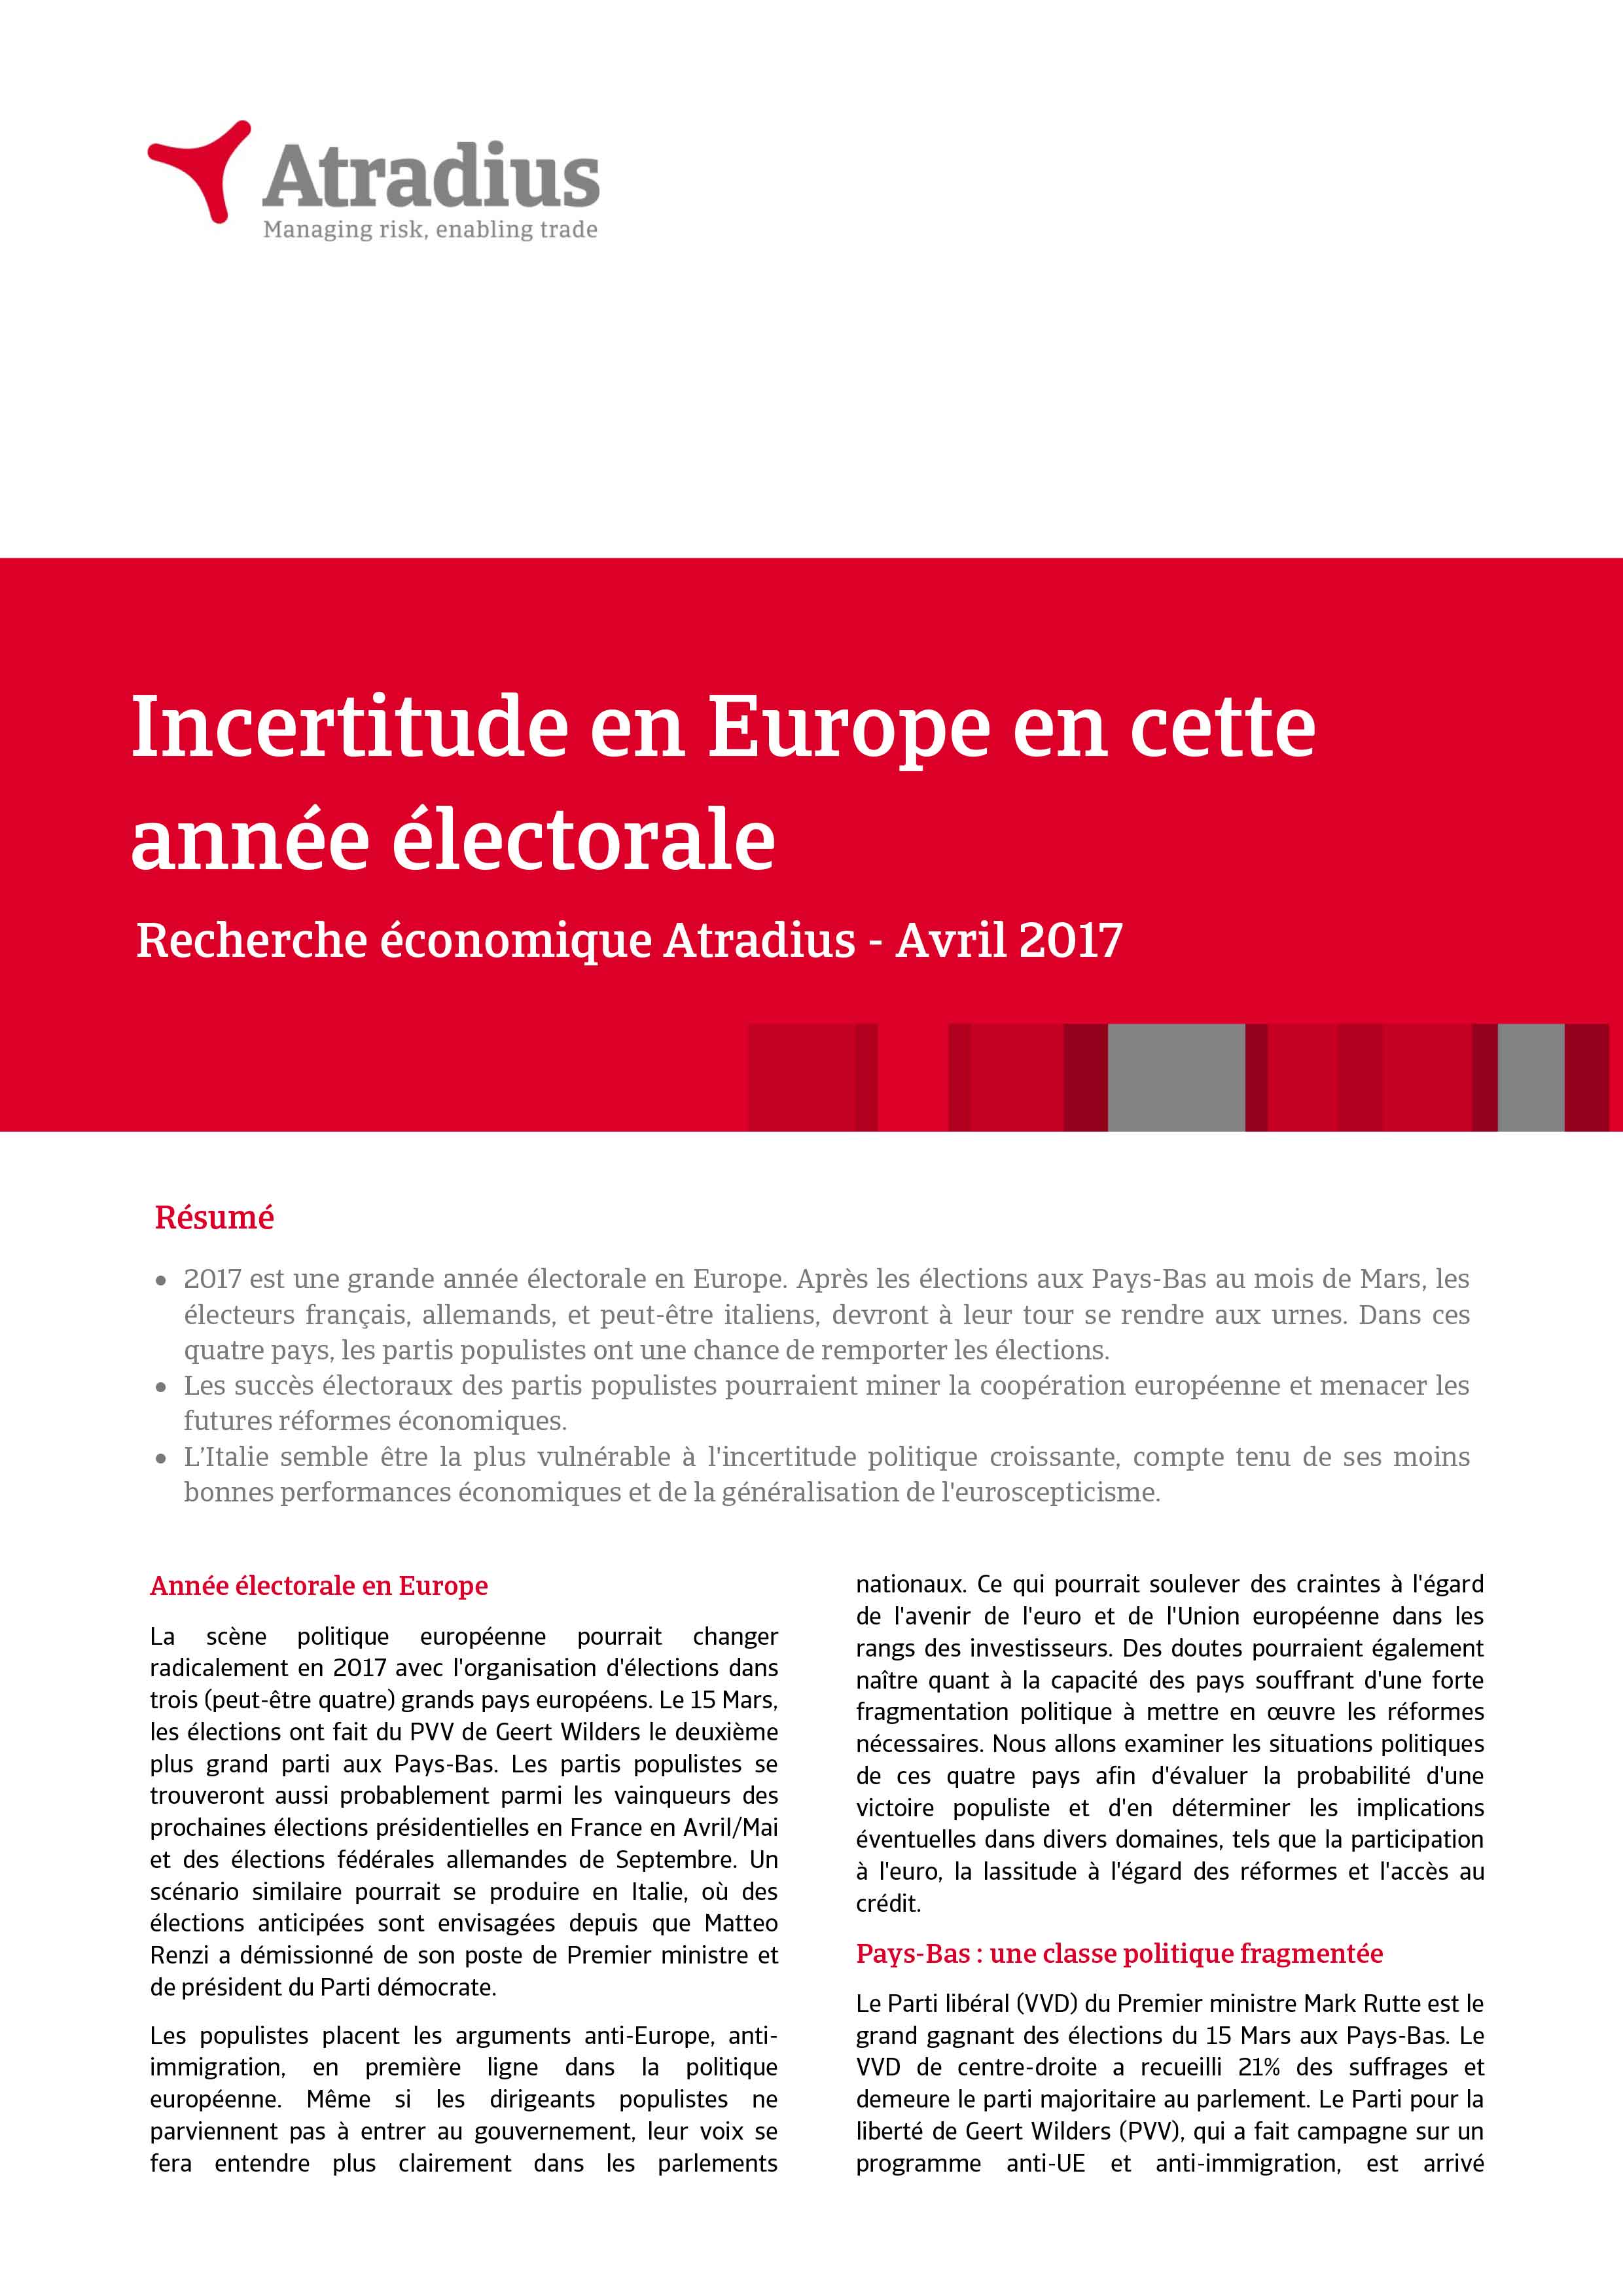 Incertitude en Europe en cette année électorale